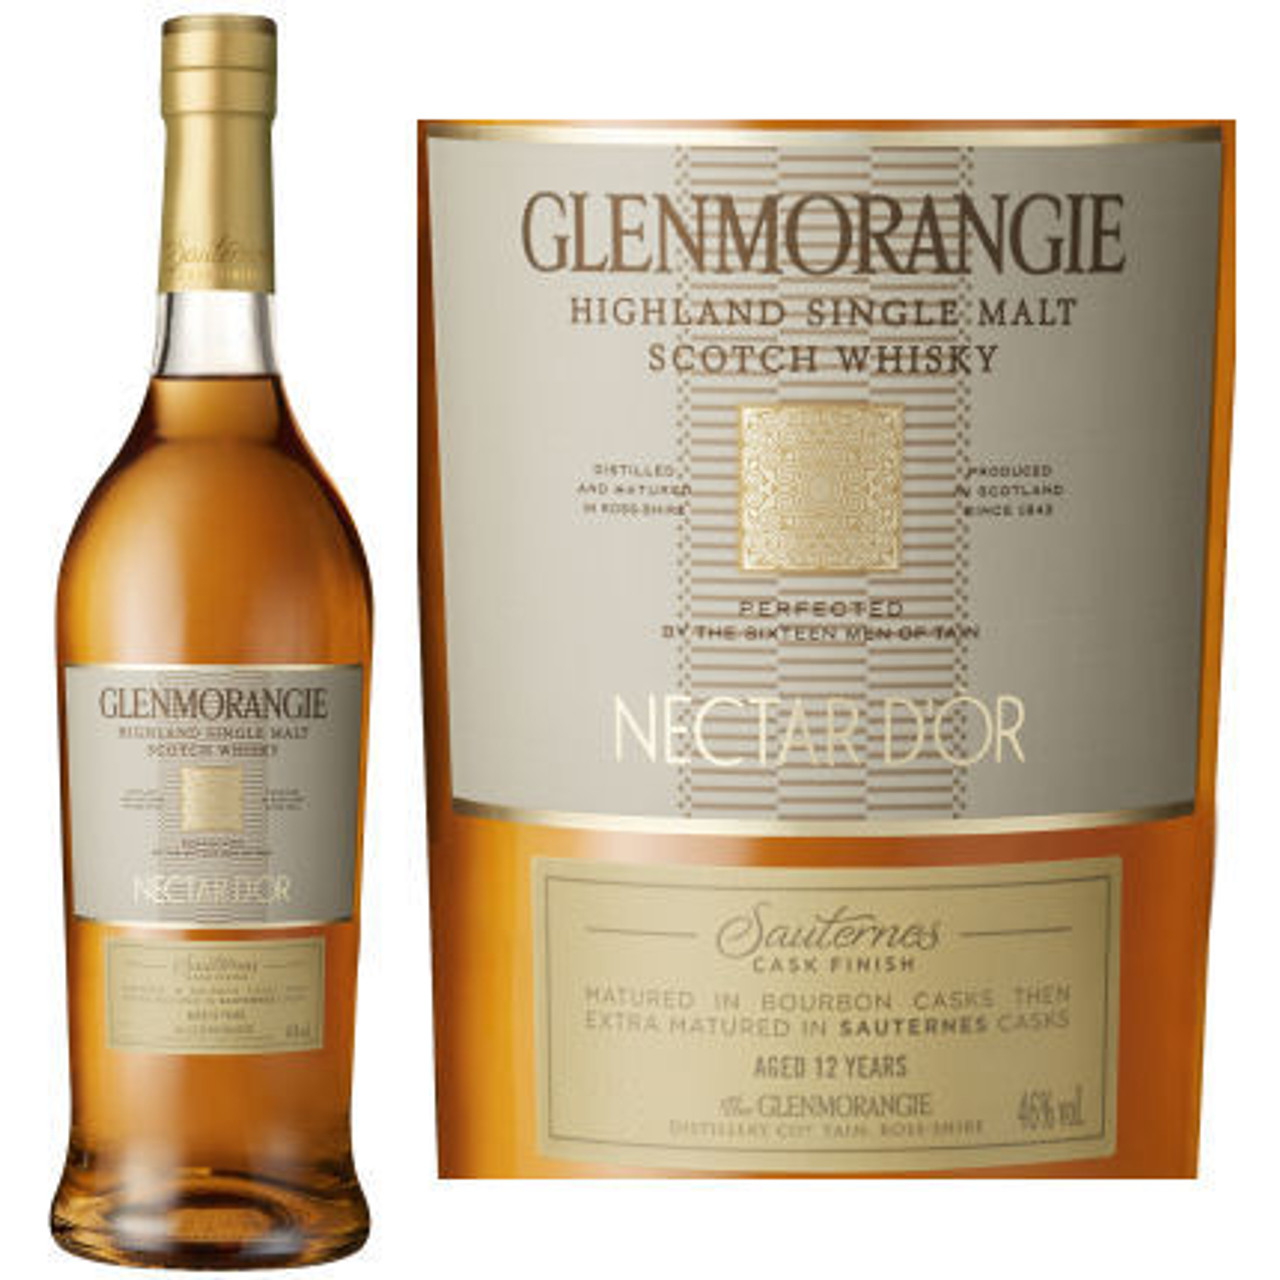 Glenmorangie Nectar D'or Single Malt Scotch 750 ml